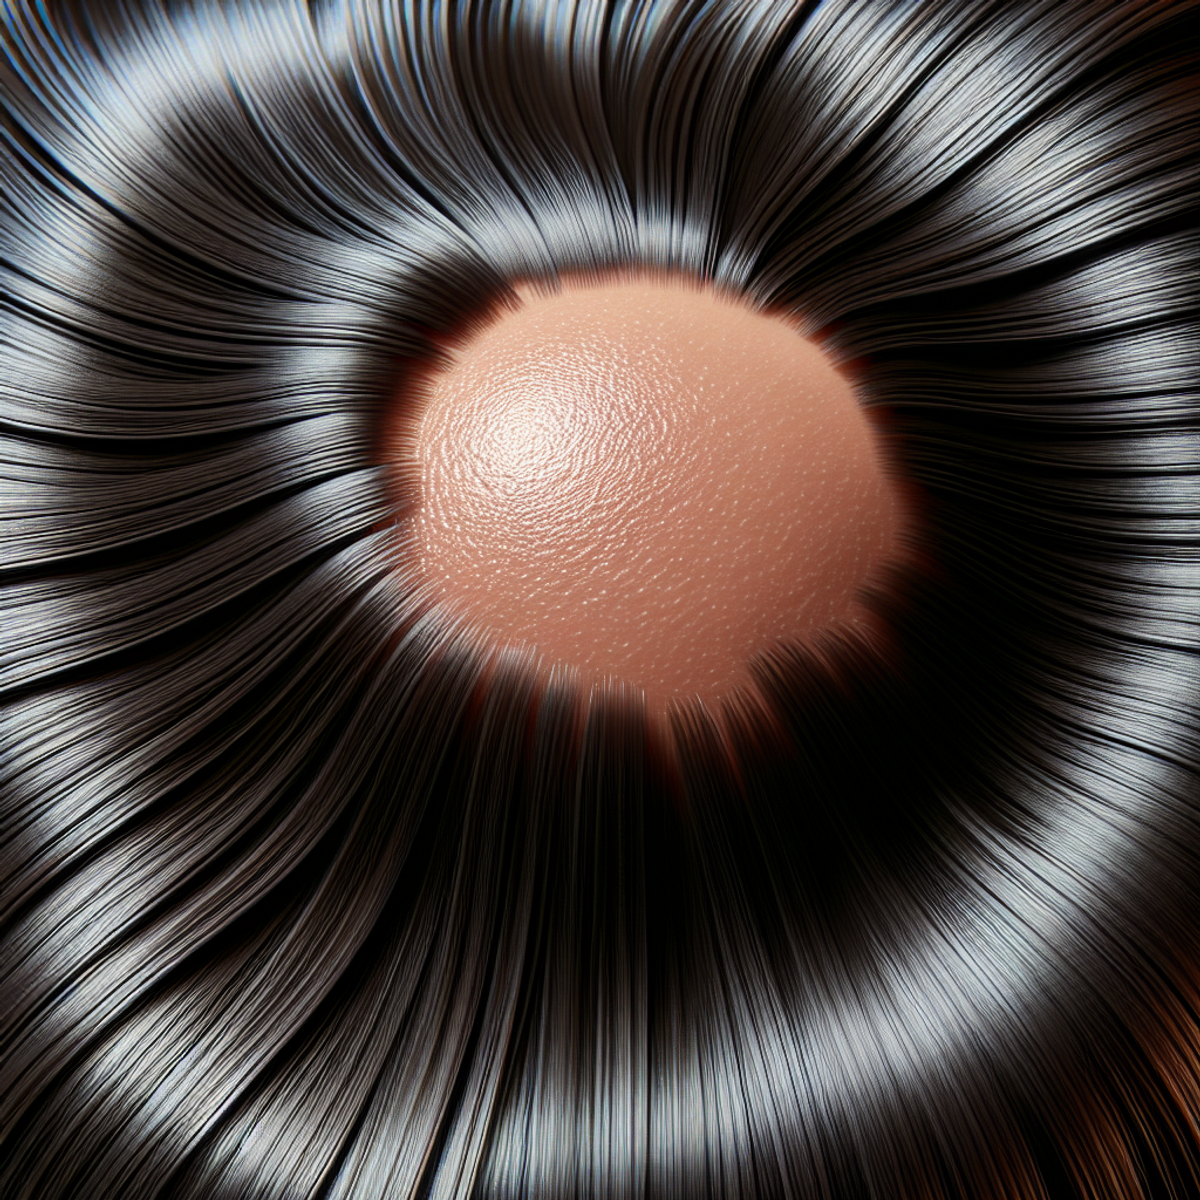 Zbliżenie zdrowej skóry głowy z błyszczącymi, gładkimi pasmami włosów.